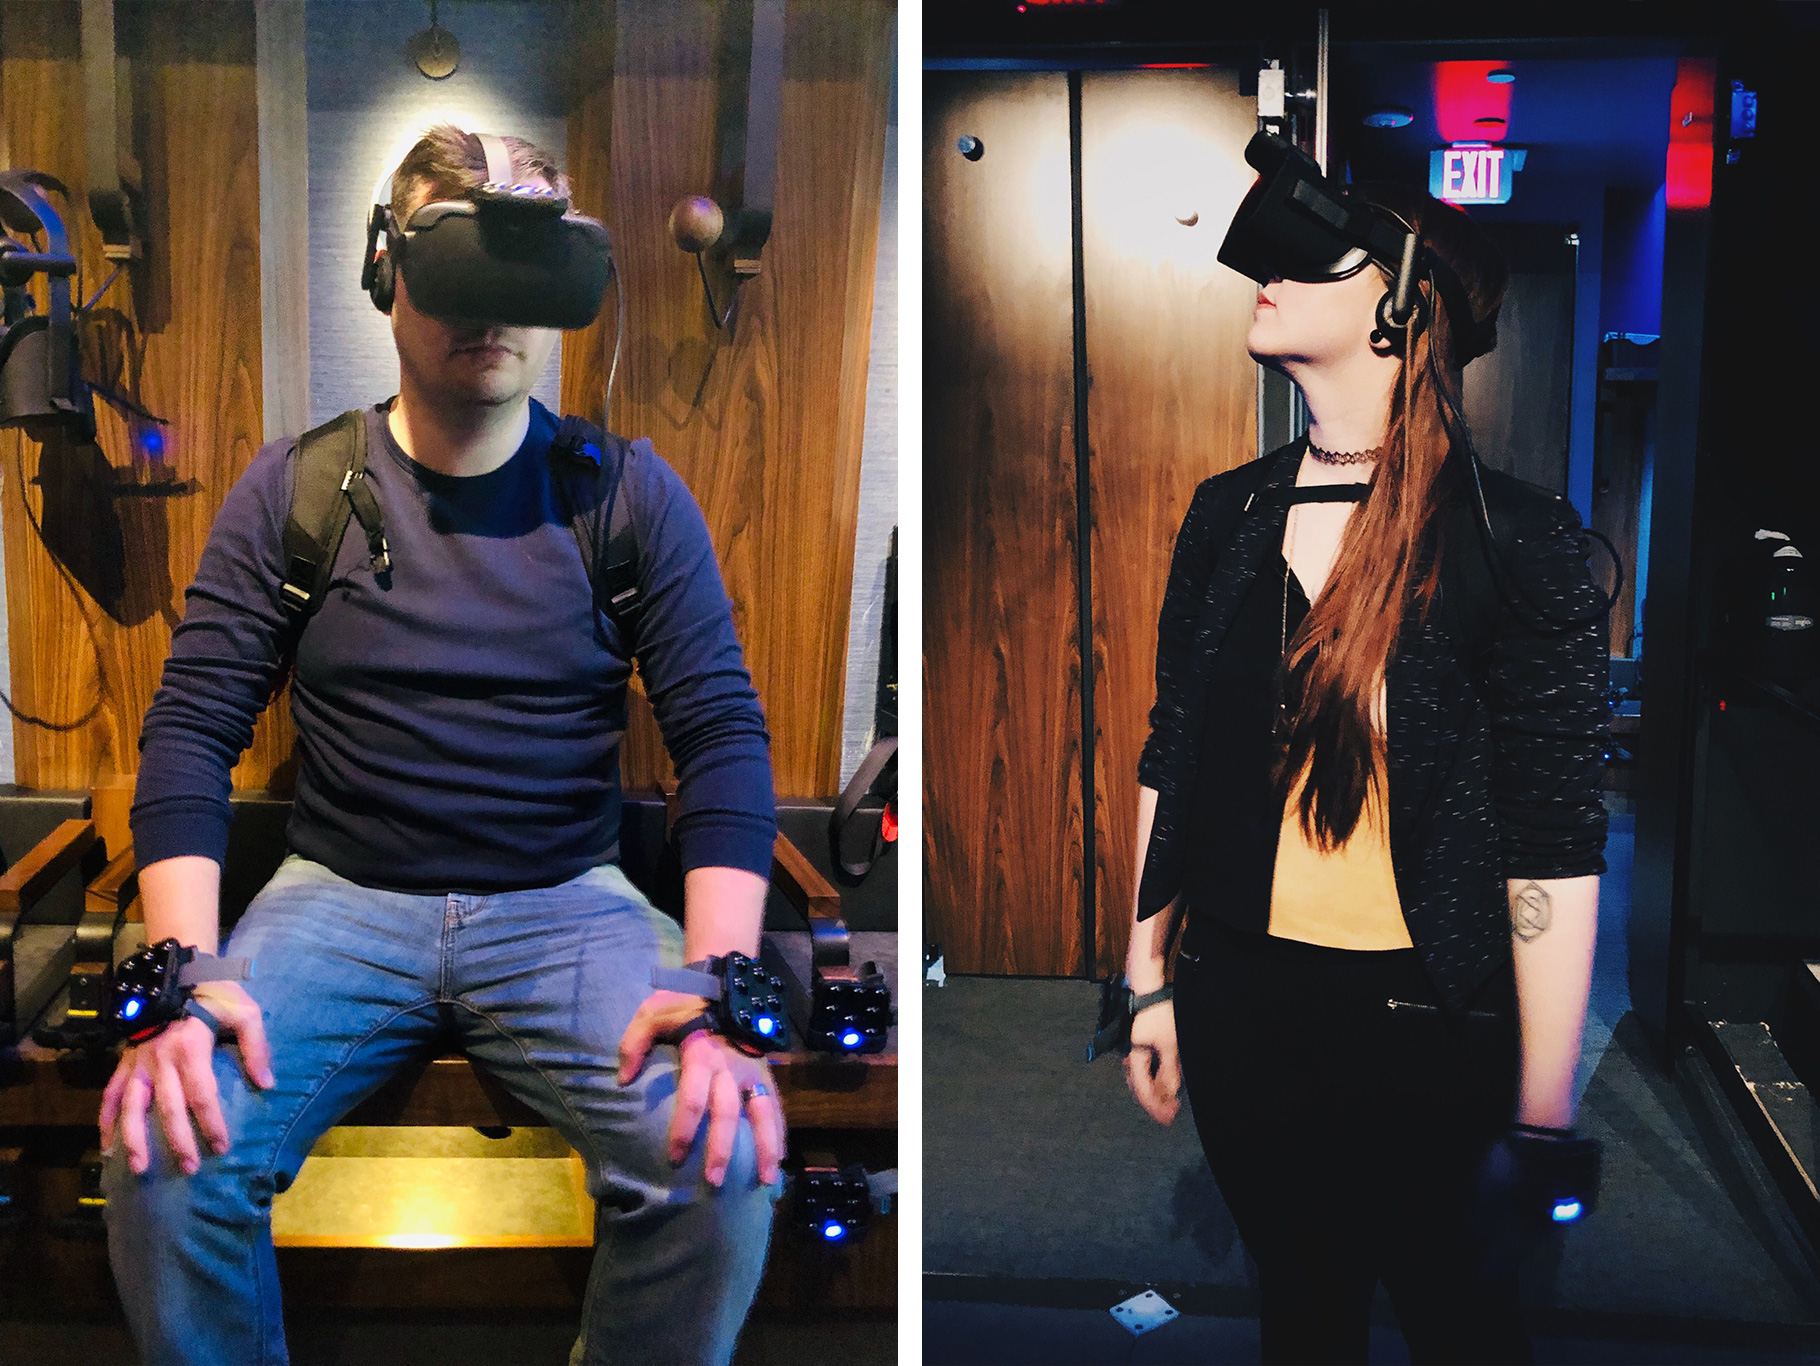 VR Installation Team